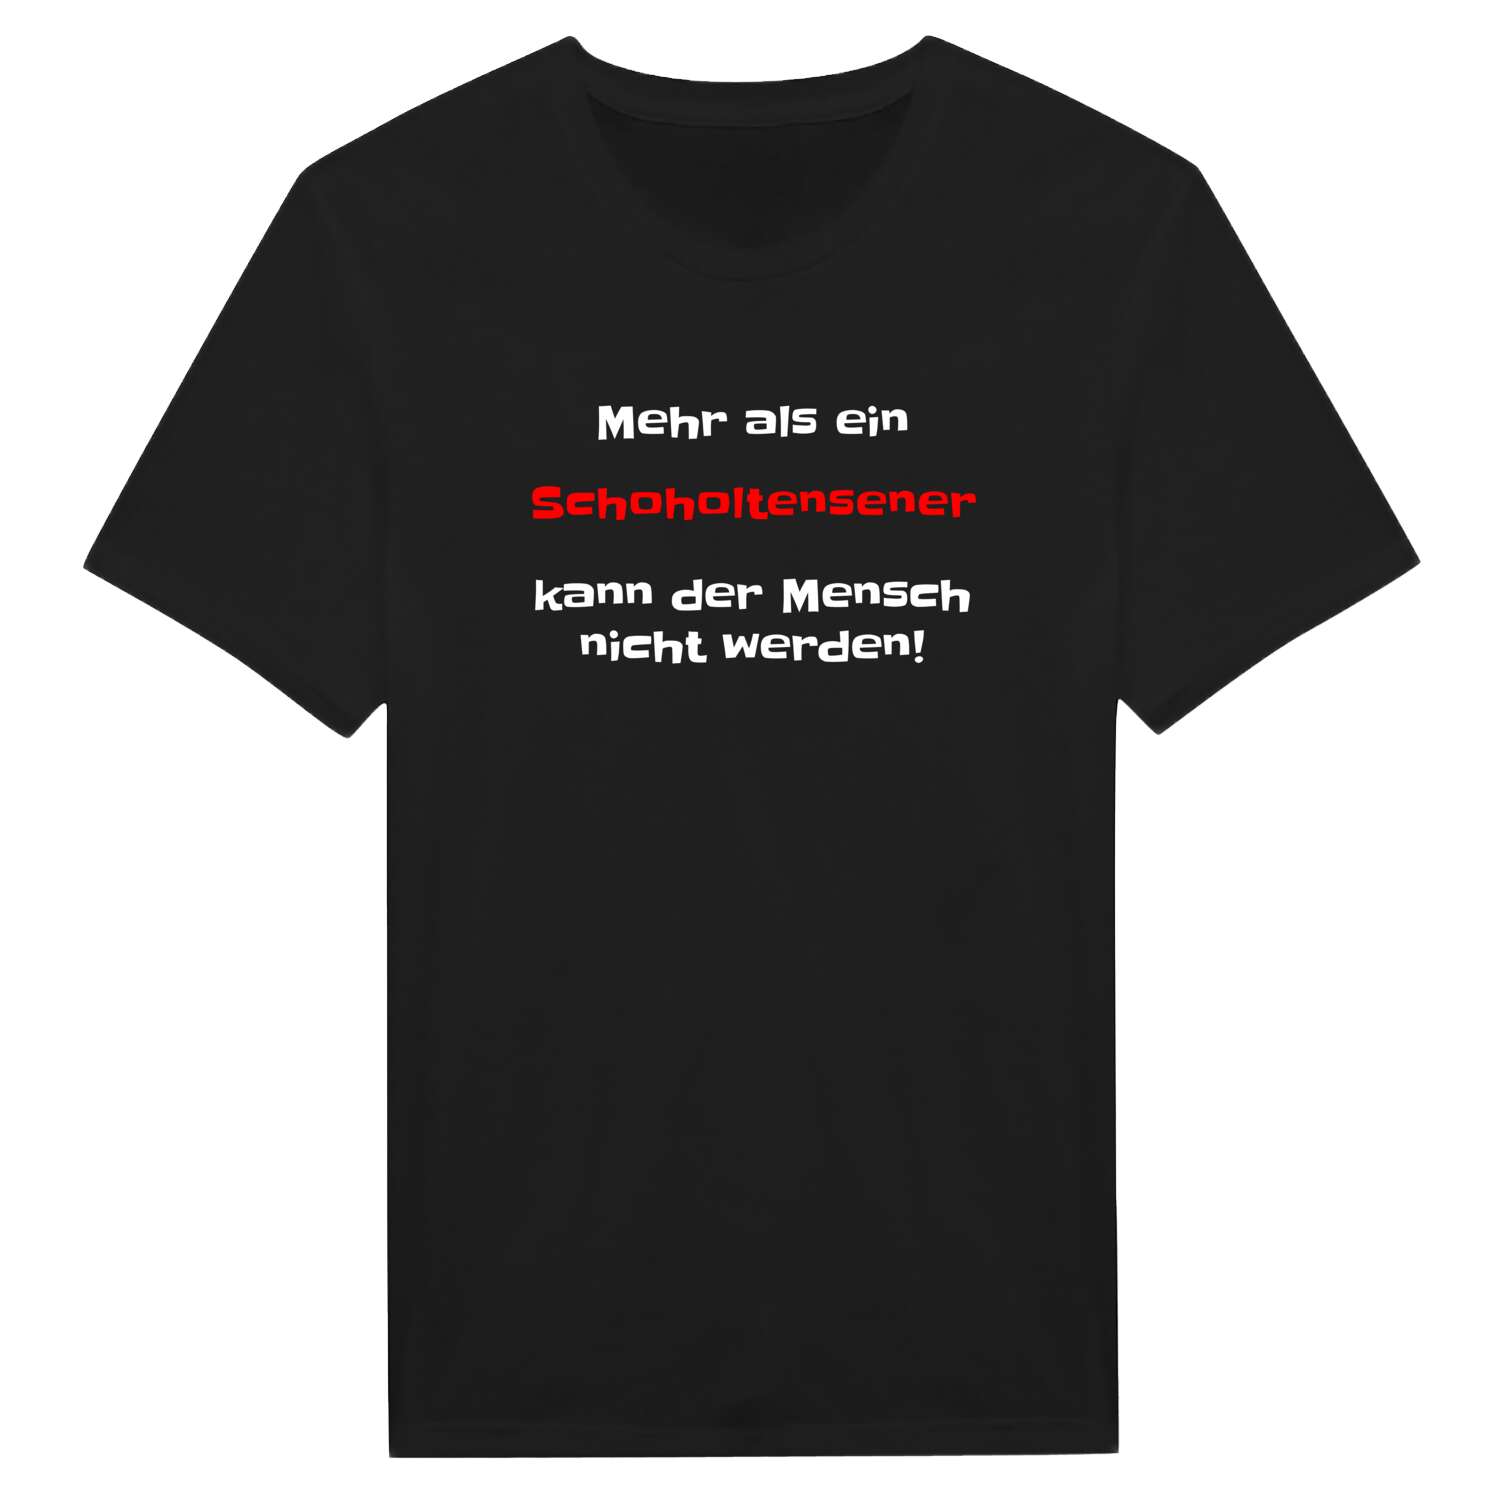 Schoholtensen T-Shirt »Mehr als ein«